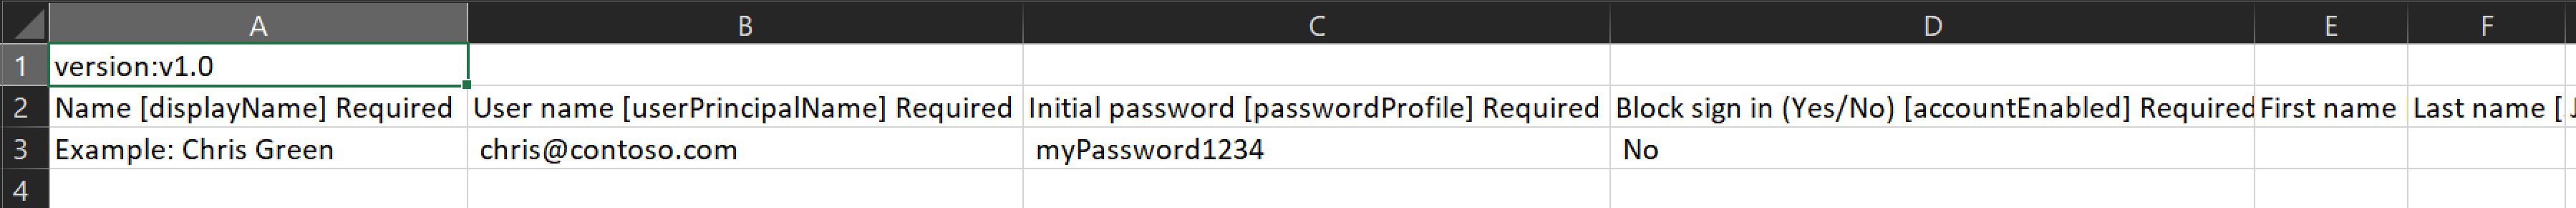 만들 사용자의 이름과 ID가 포함된 CSV 파일의 예를 보여 주는 스크린샷.